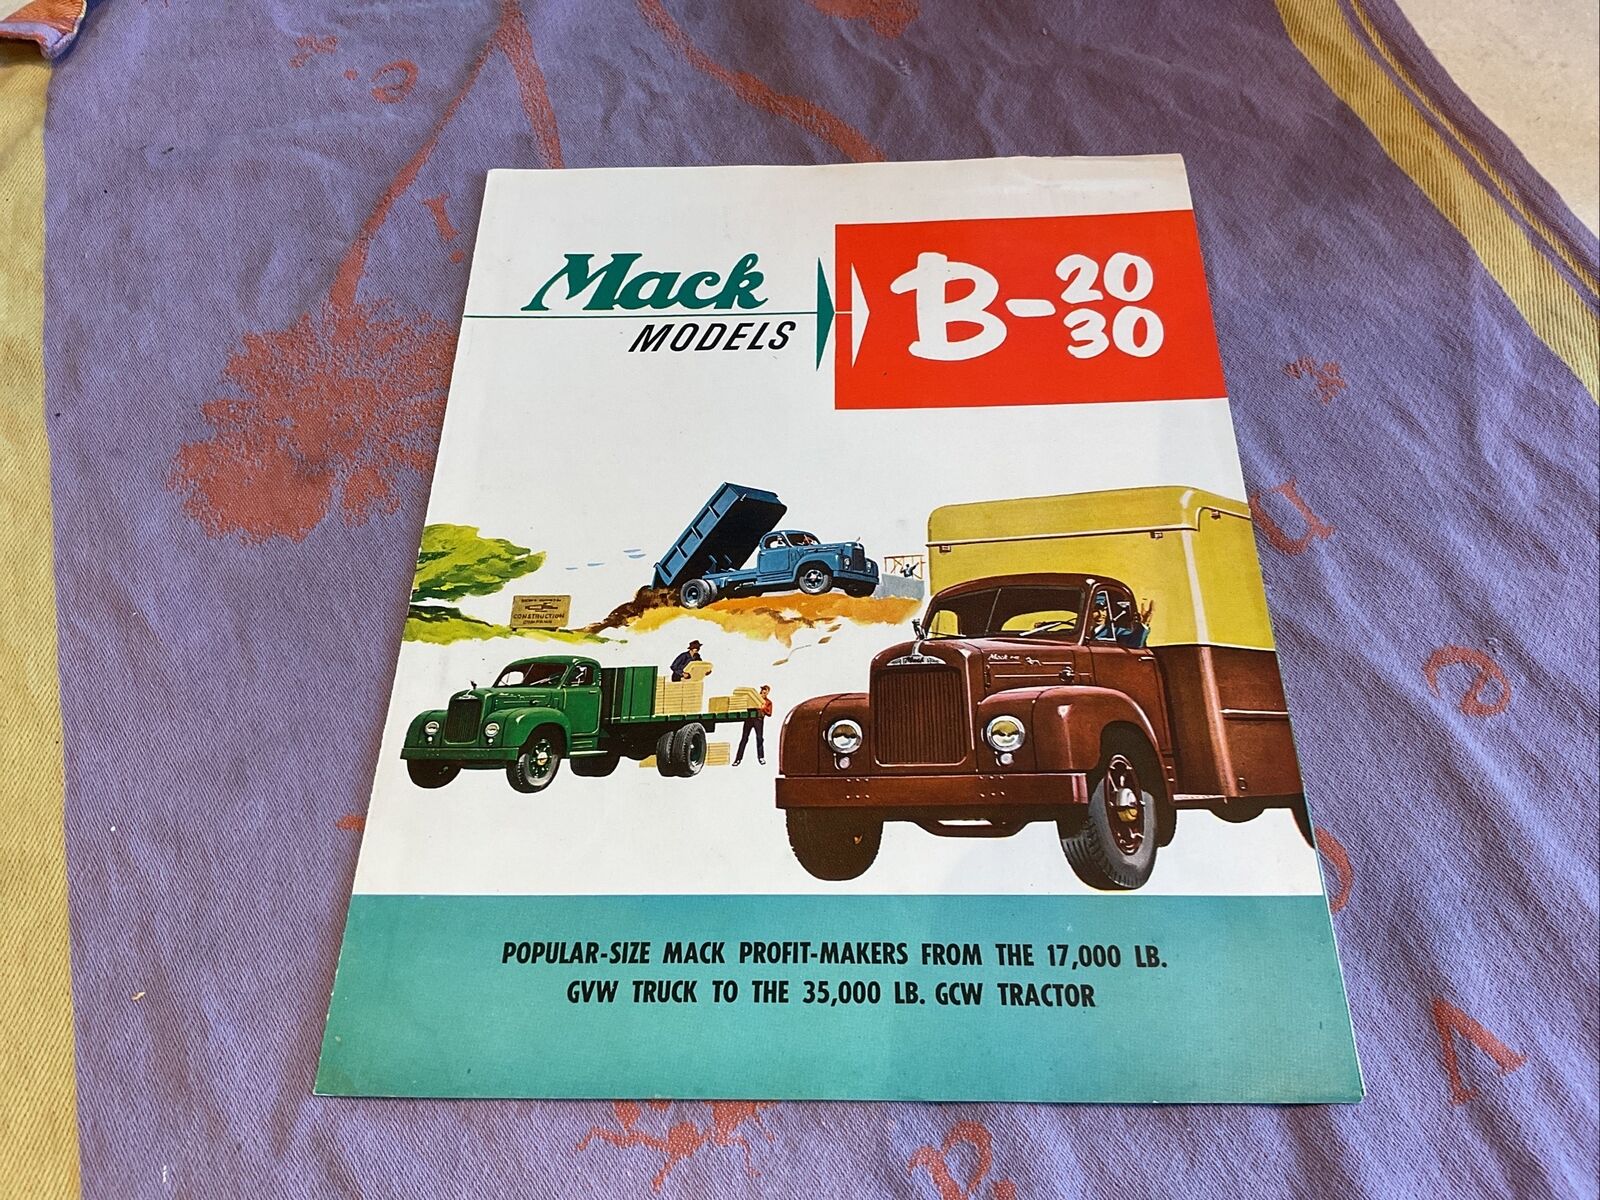 1953 Mack Truck Models B-20 And B-30 Original Sales Brochure